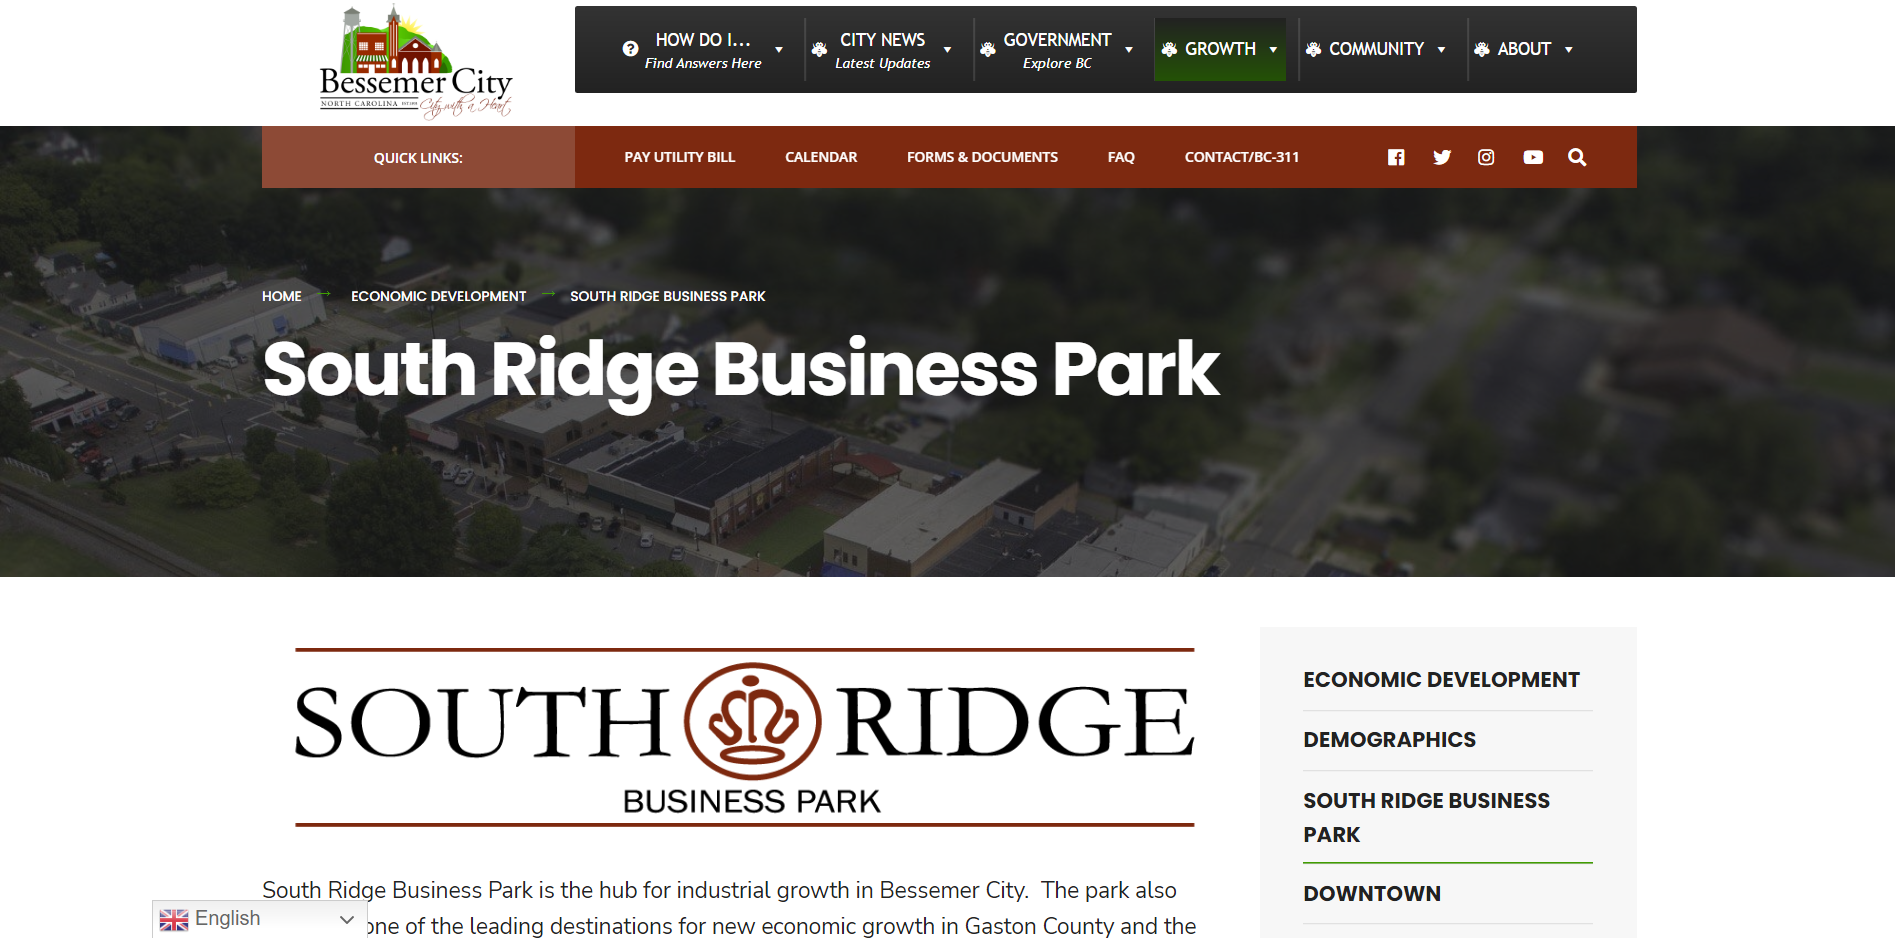 South Ridge Business Park